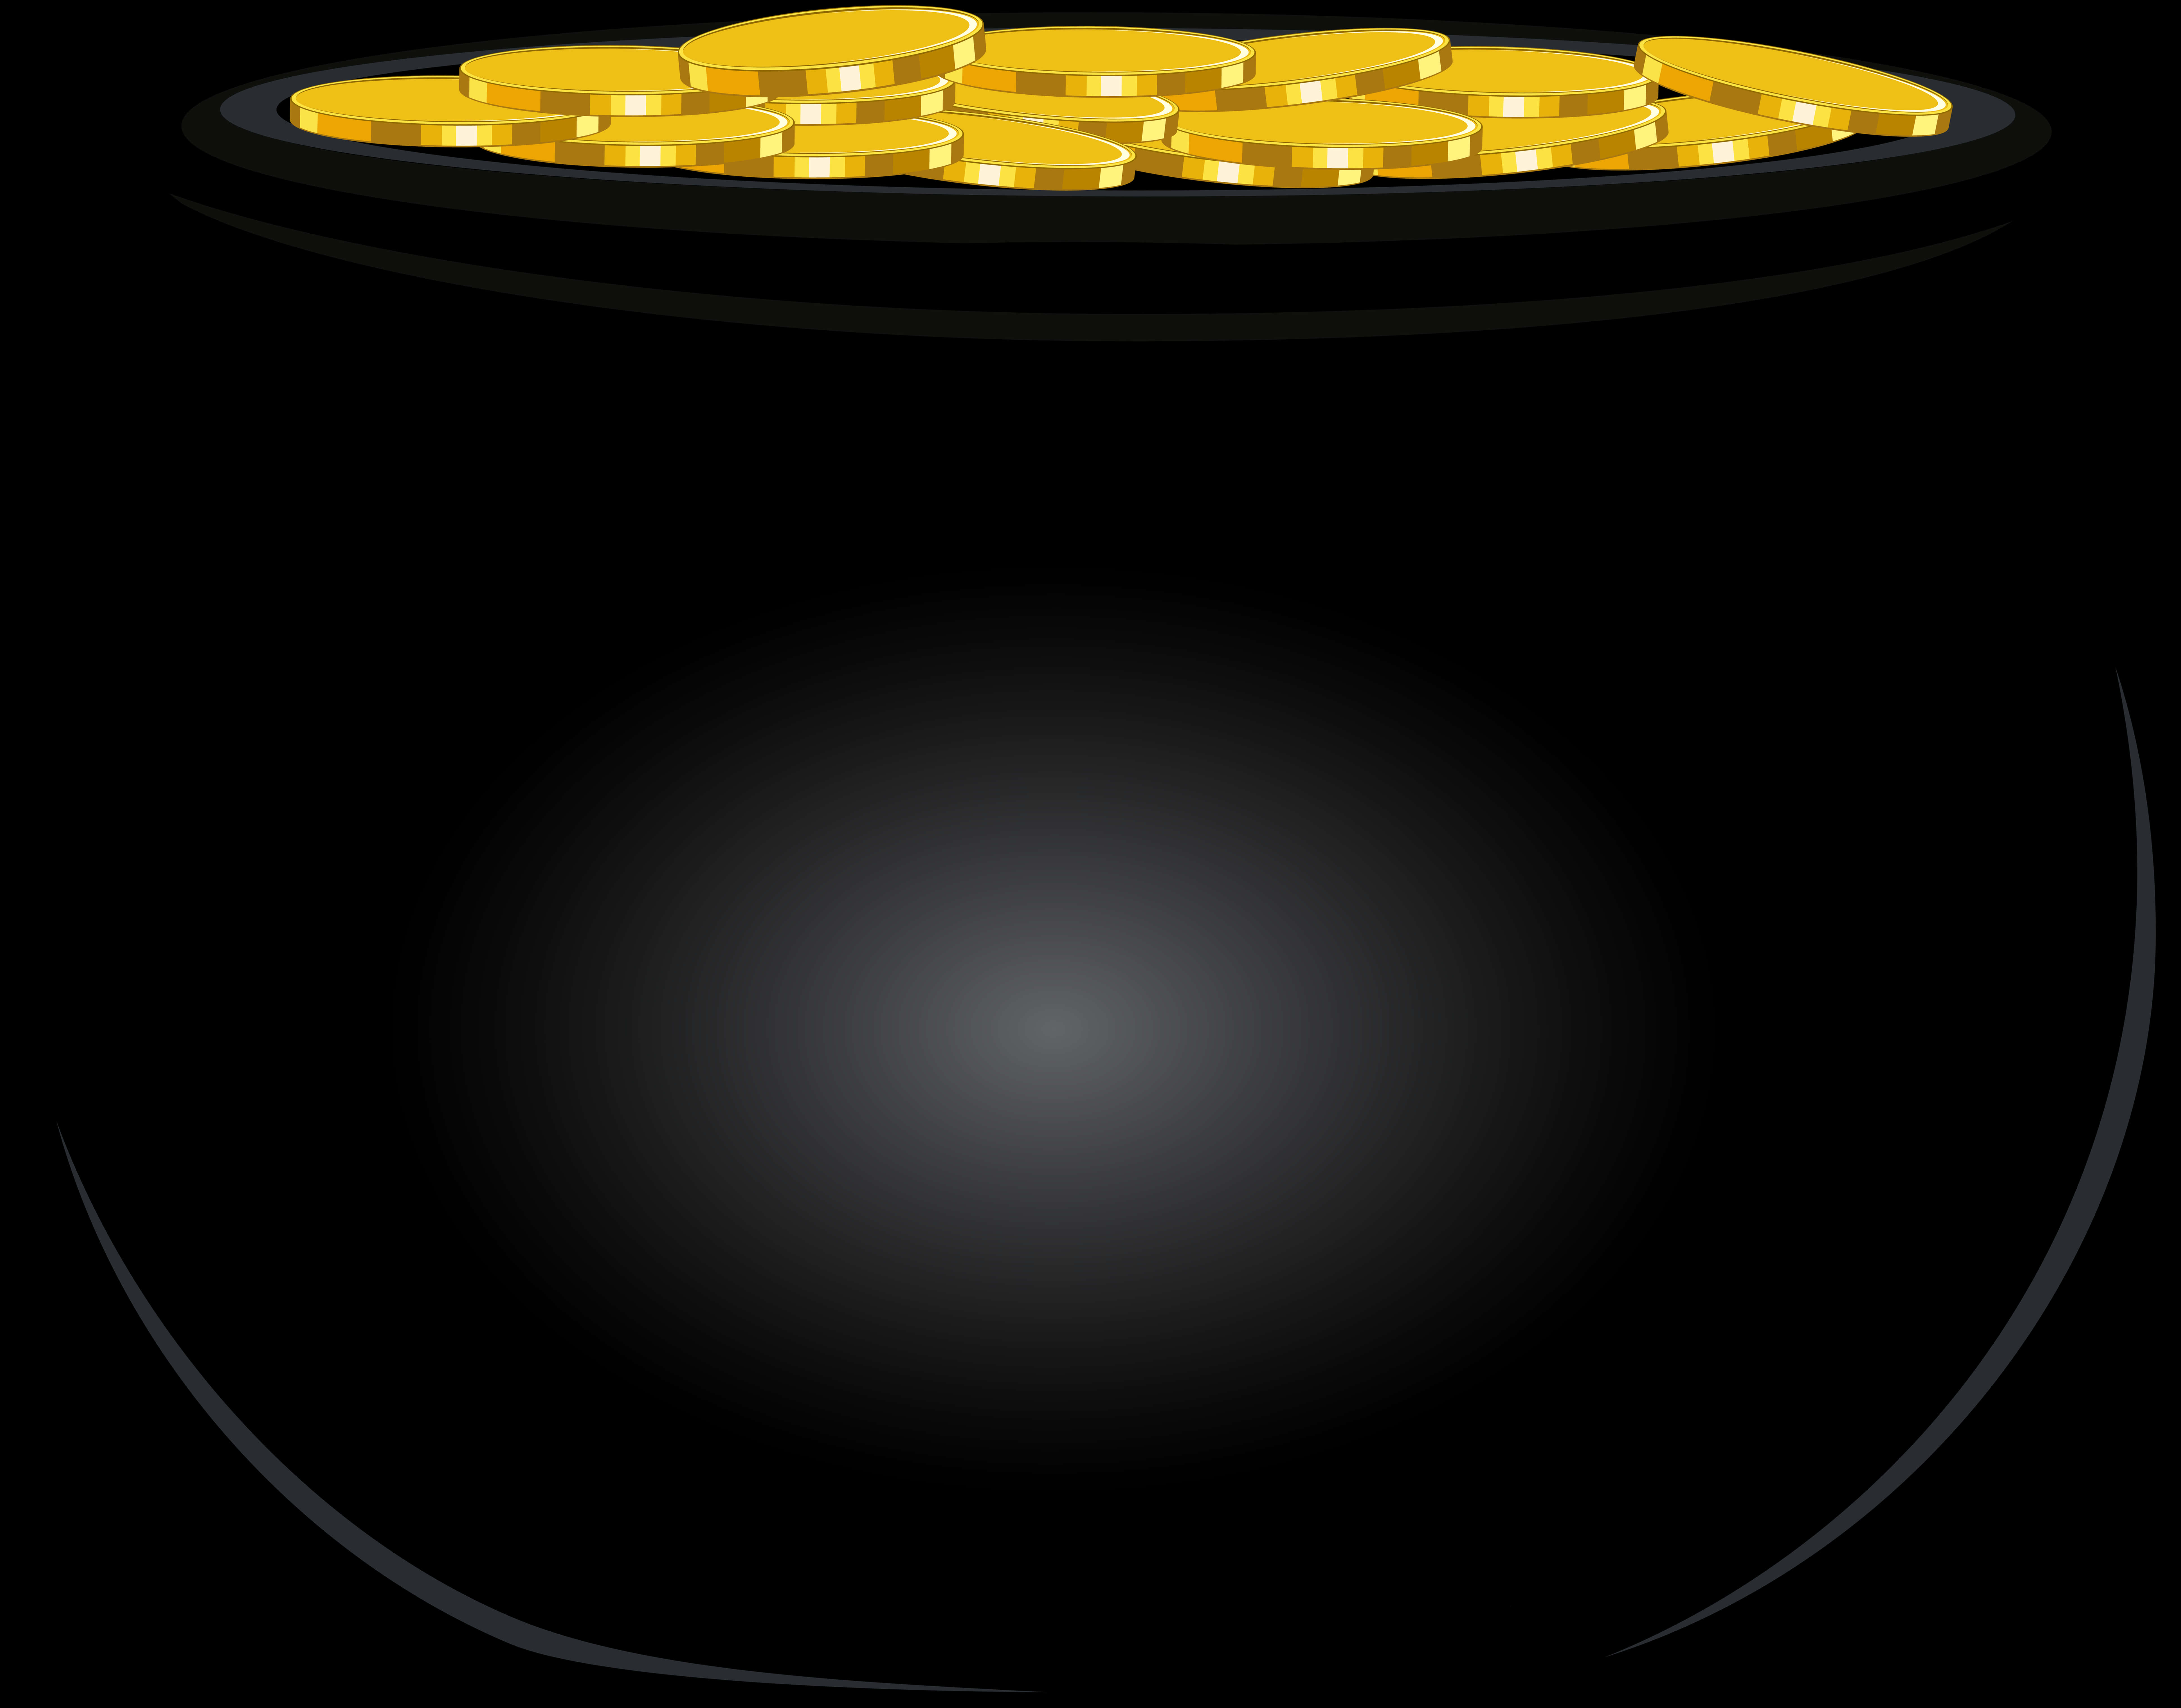 A Pot Of Gold Coins